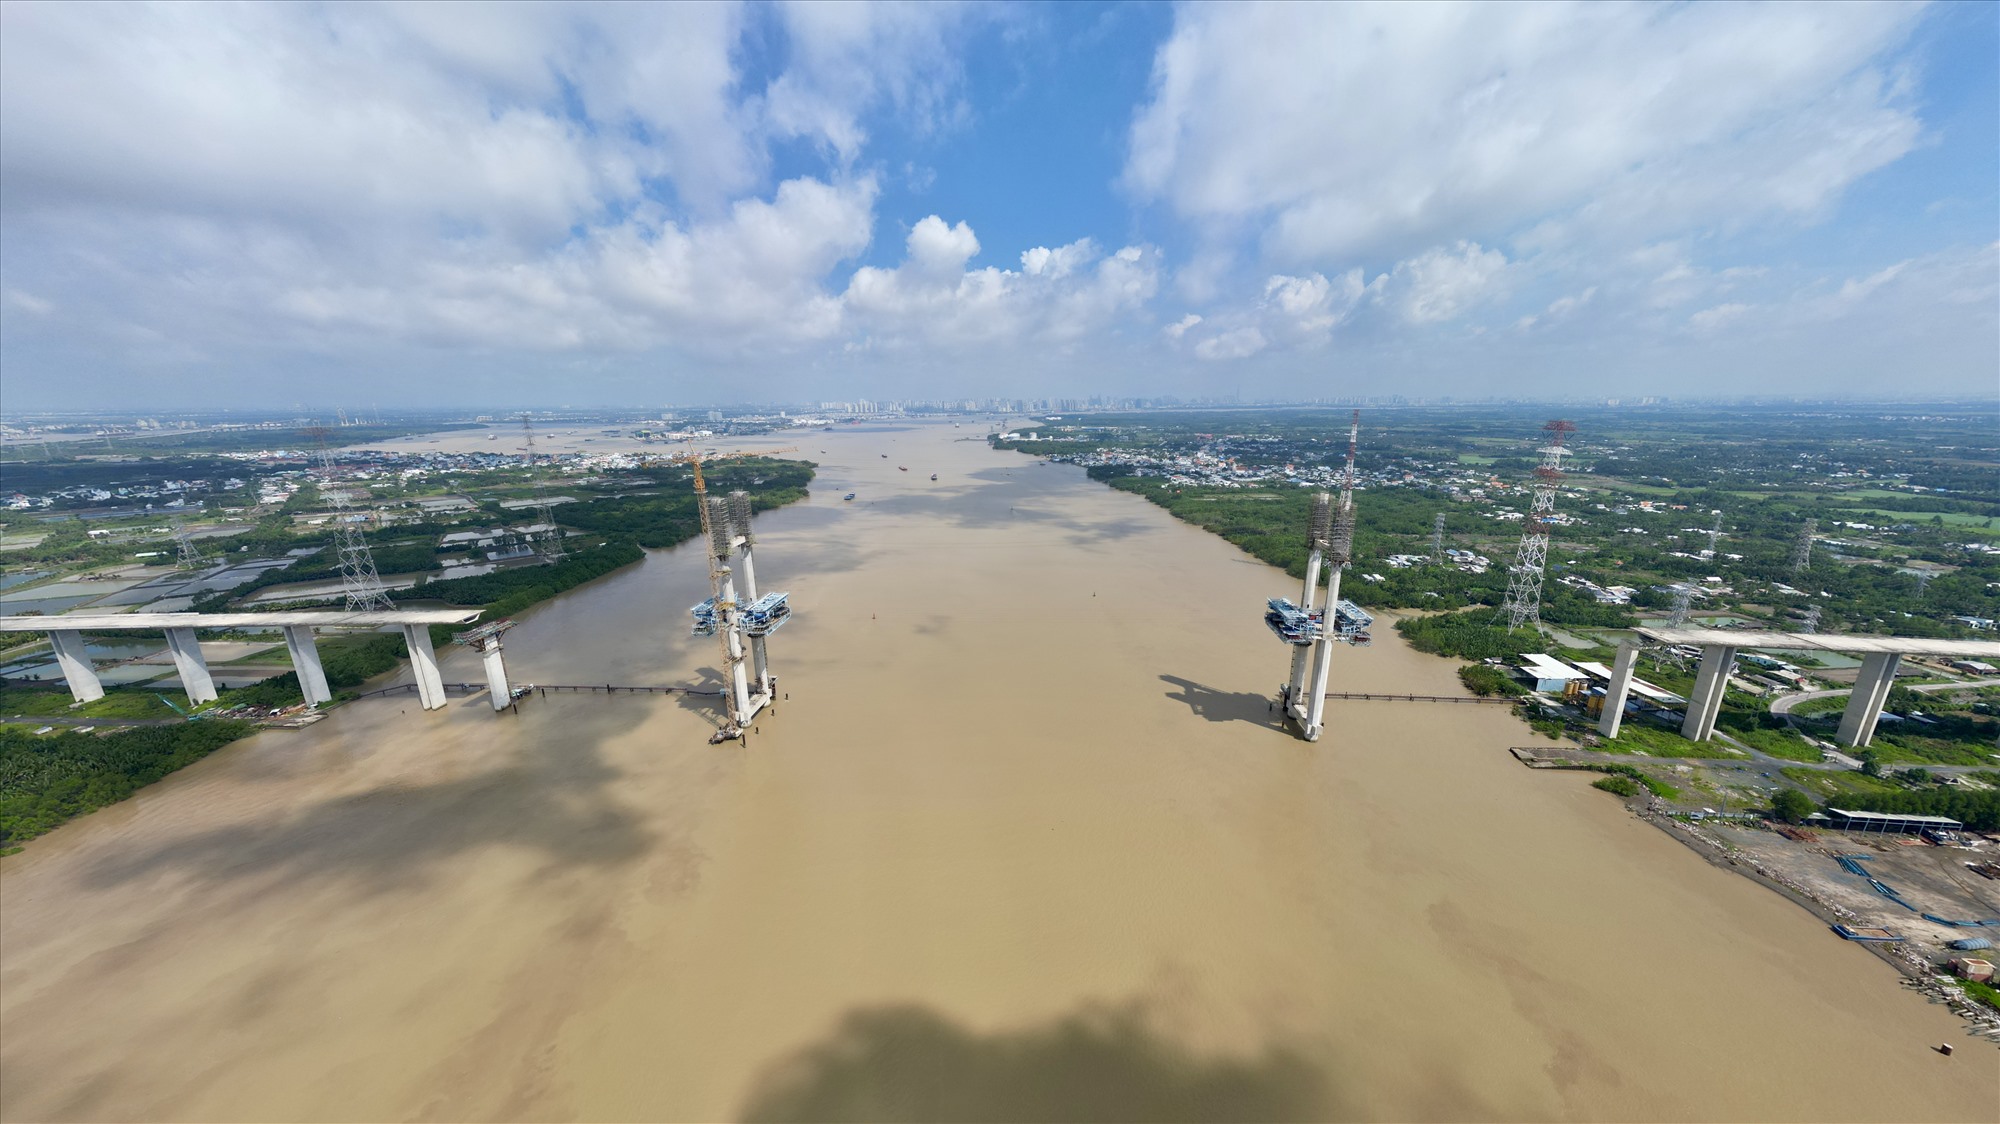 Cầu Phước Khánh khởi công 8.2015, dài 3,1 km, nhịp chính dài 300 m, bắc qua sông Lòng Tàu. Cầu rộng 21,7 m và nối huyện Cần Giờ (TP HCM) với huyện Nhơn Trạch (Đồng Nai). 